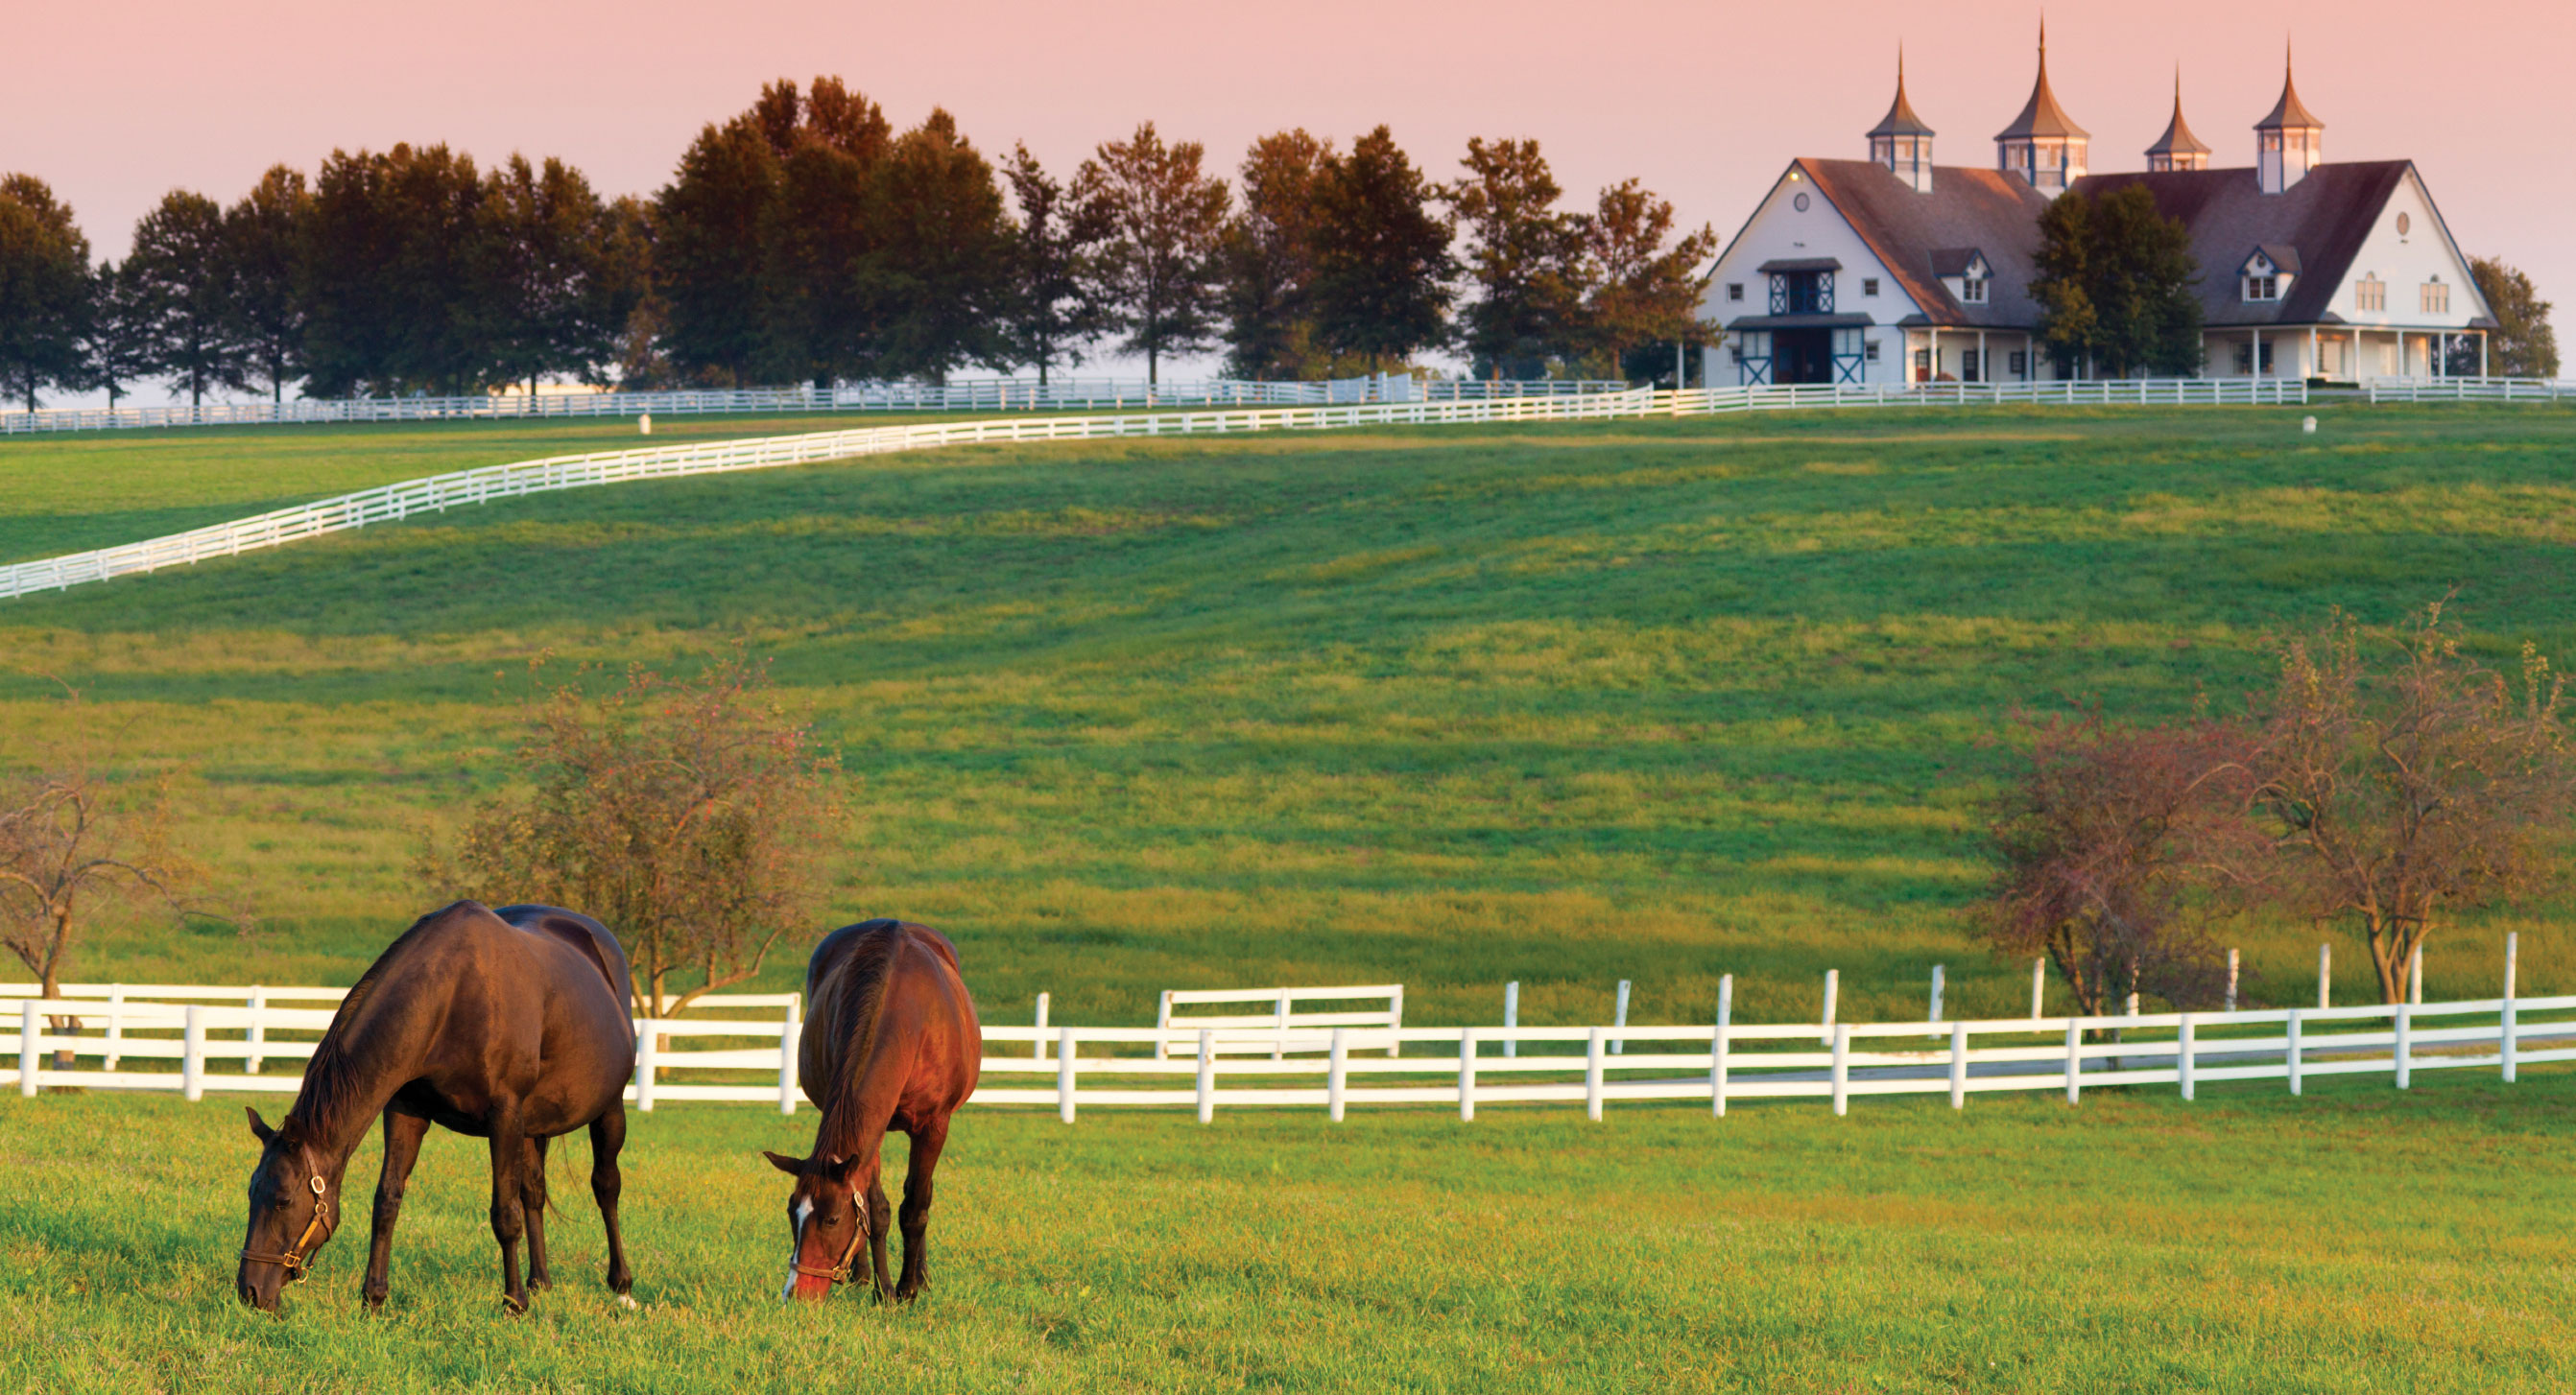 Horse farm. Kentucky horse farms, Horse farms, Horses